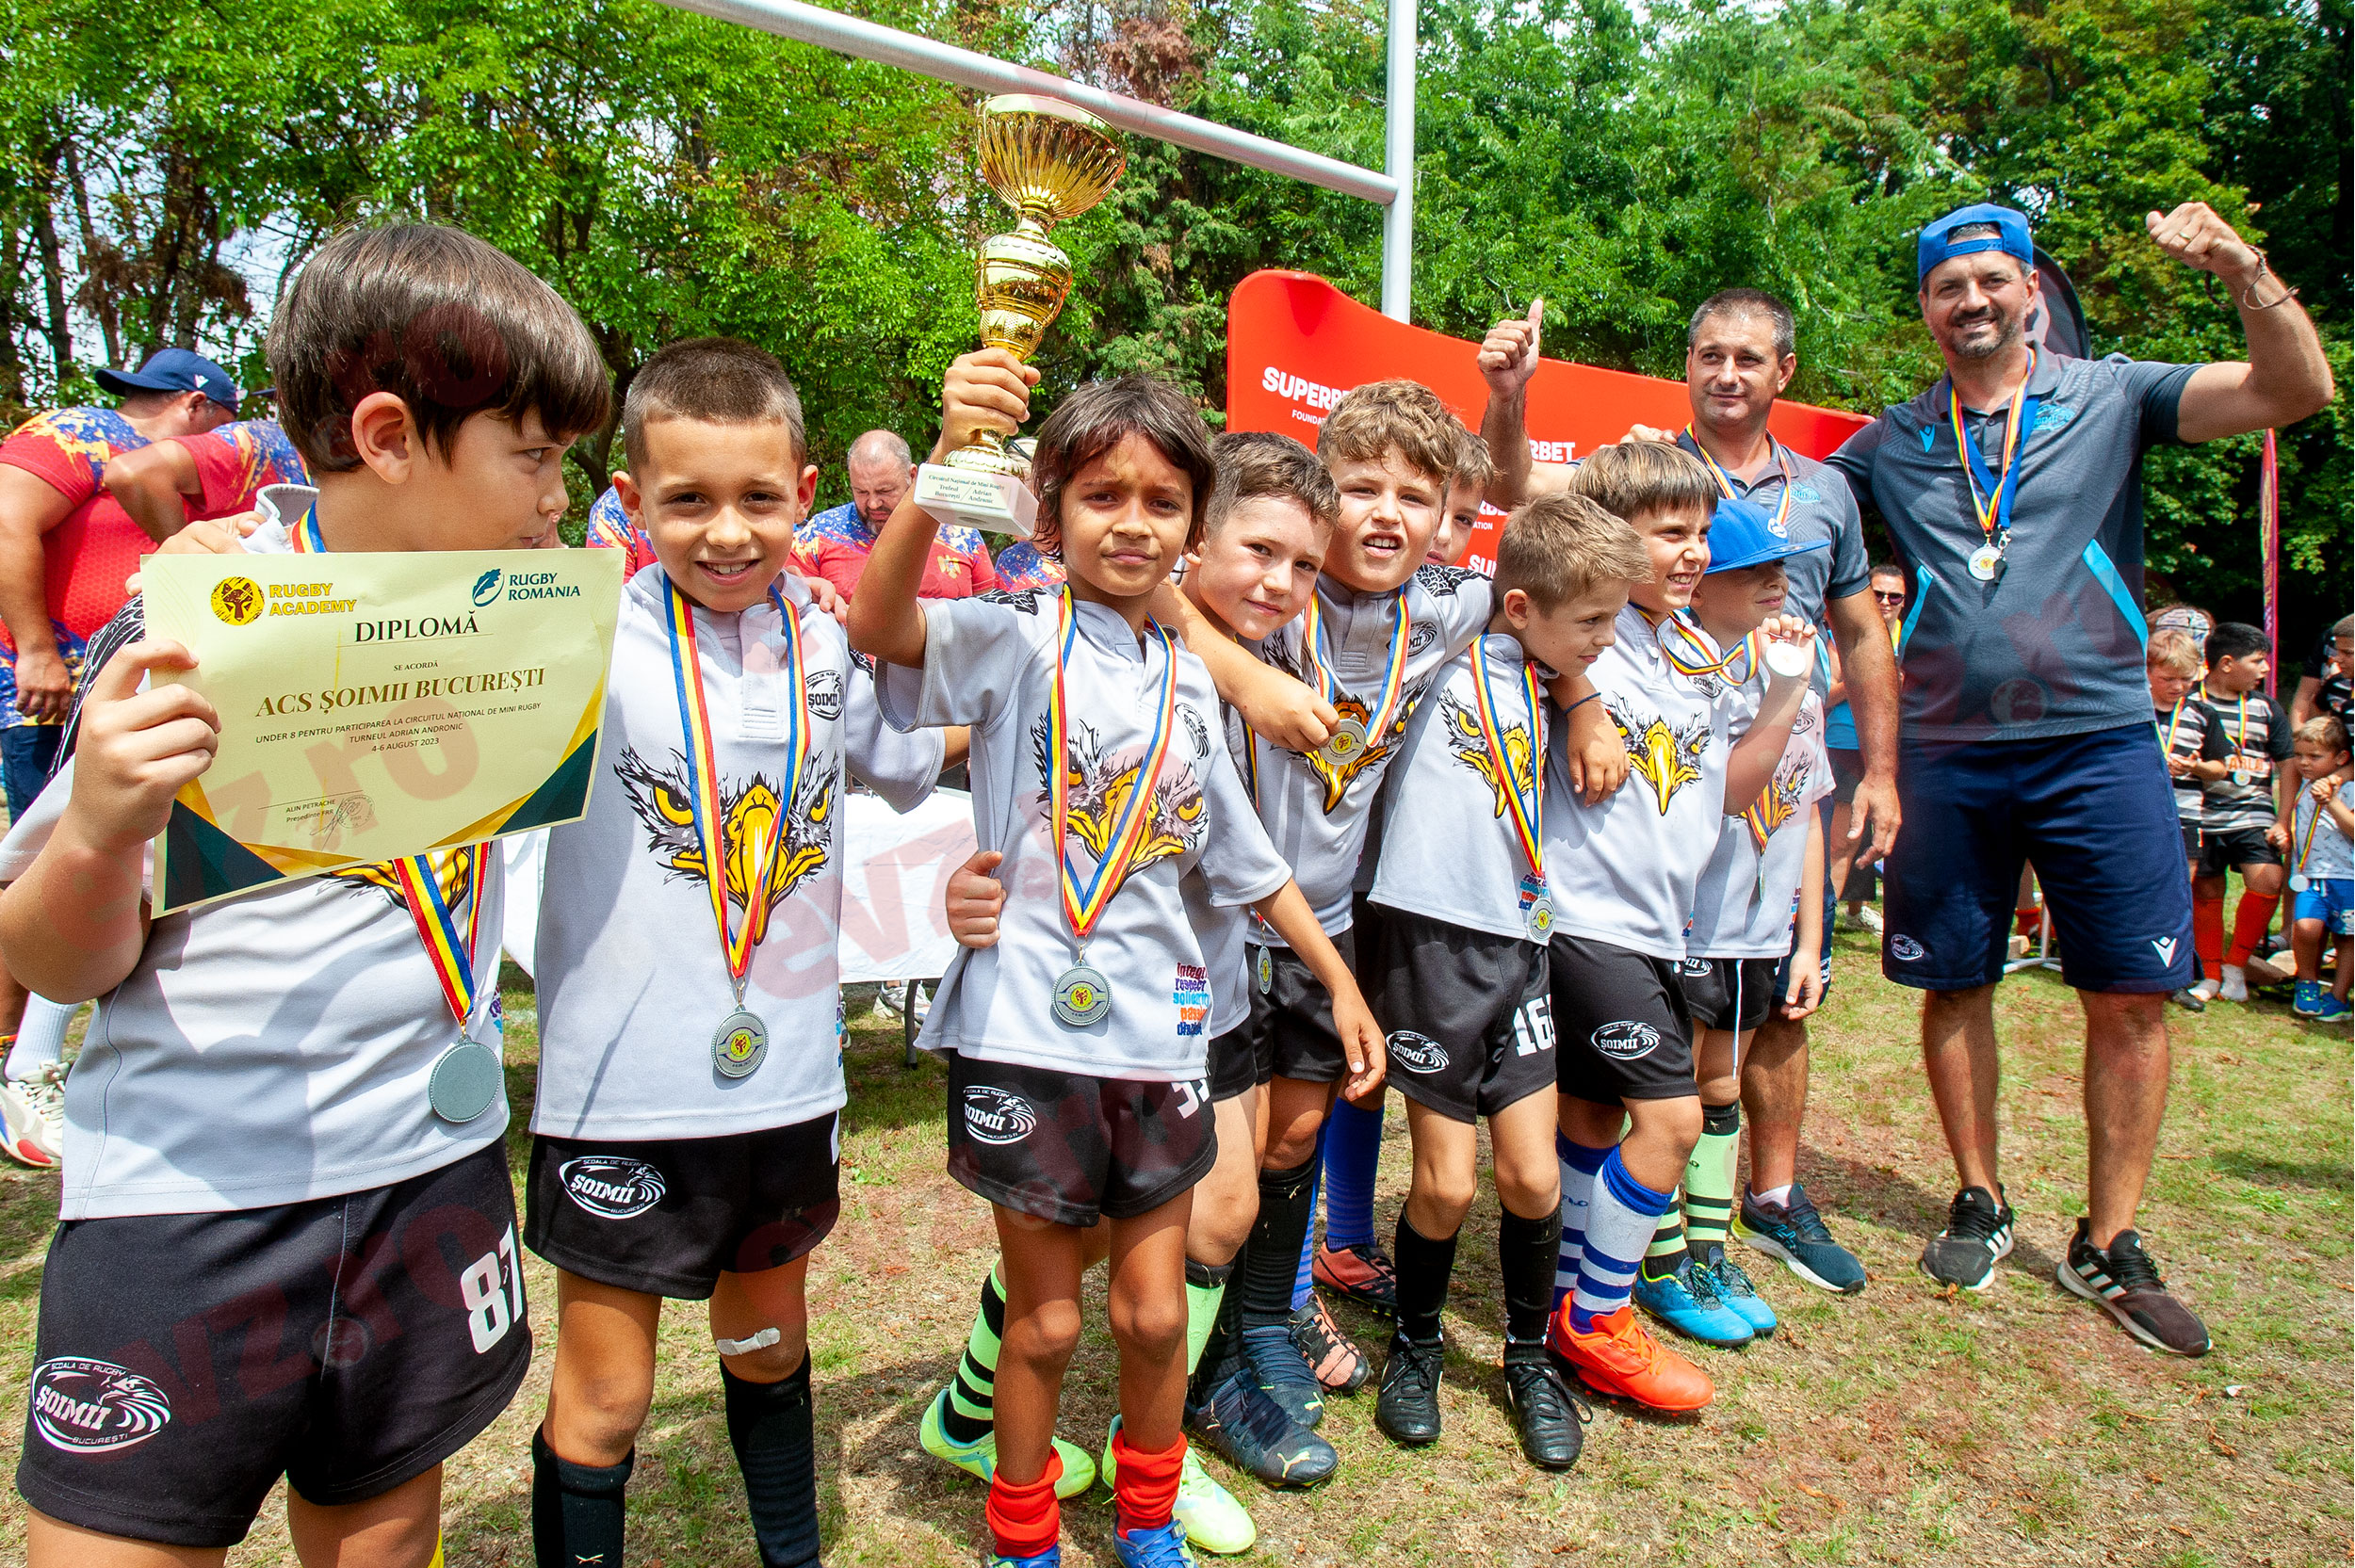 Echipa de rugby de juniori ASC Șoimii București primește diploma pentru locul întâi la categoria „sub opt ani” în cadrul turneului Adrian Corneliu Andronic (sursă foto: Evenimentul Zilei / Răzvan Vălcăneanțu)